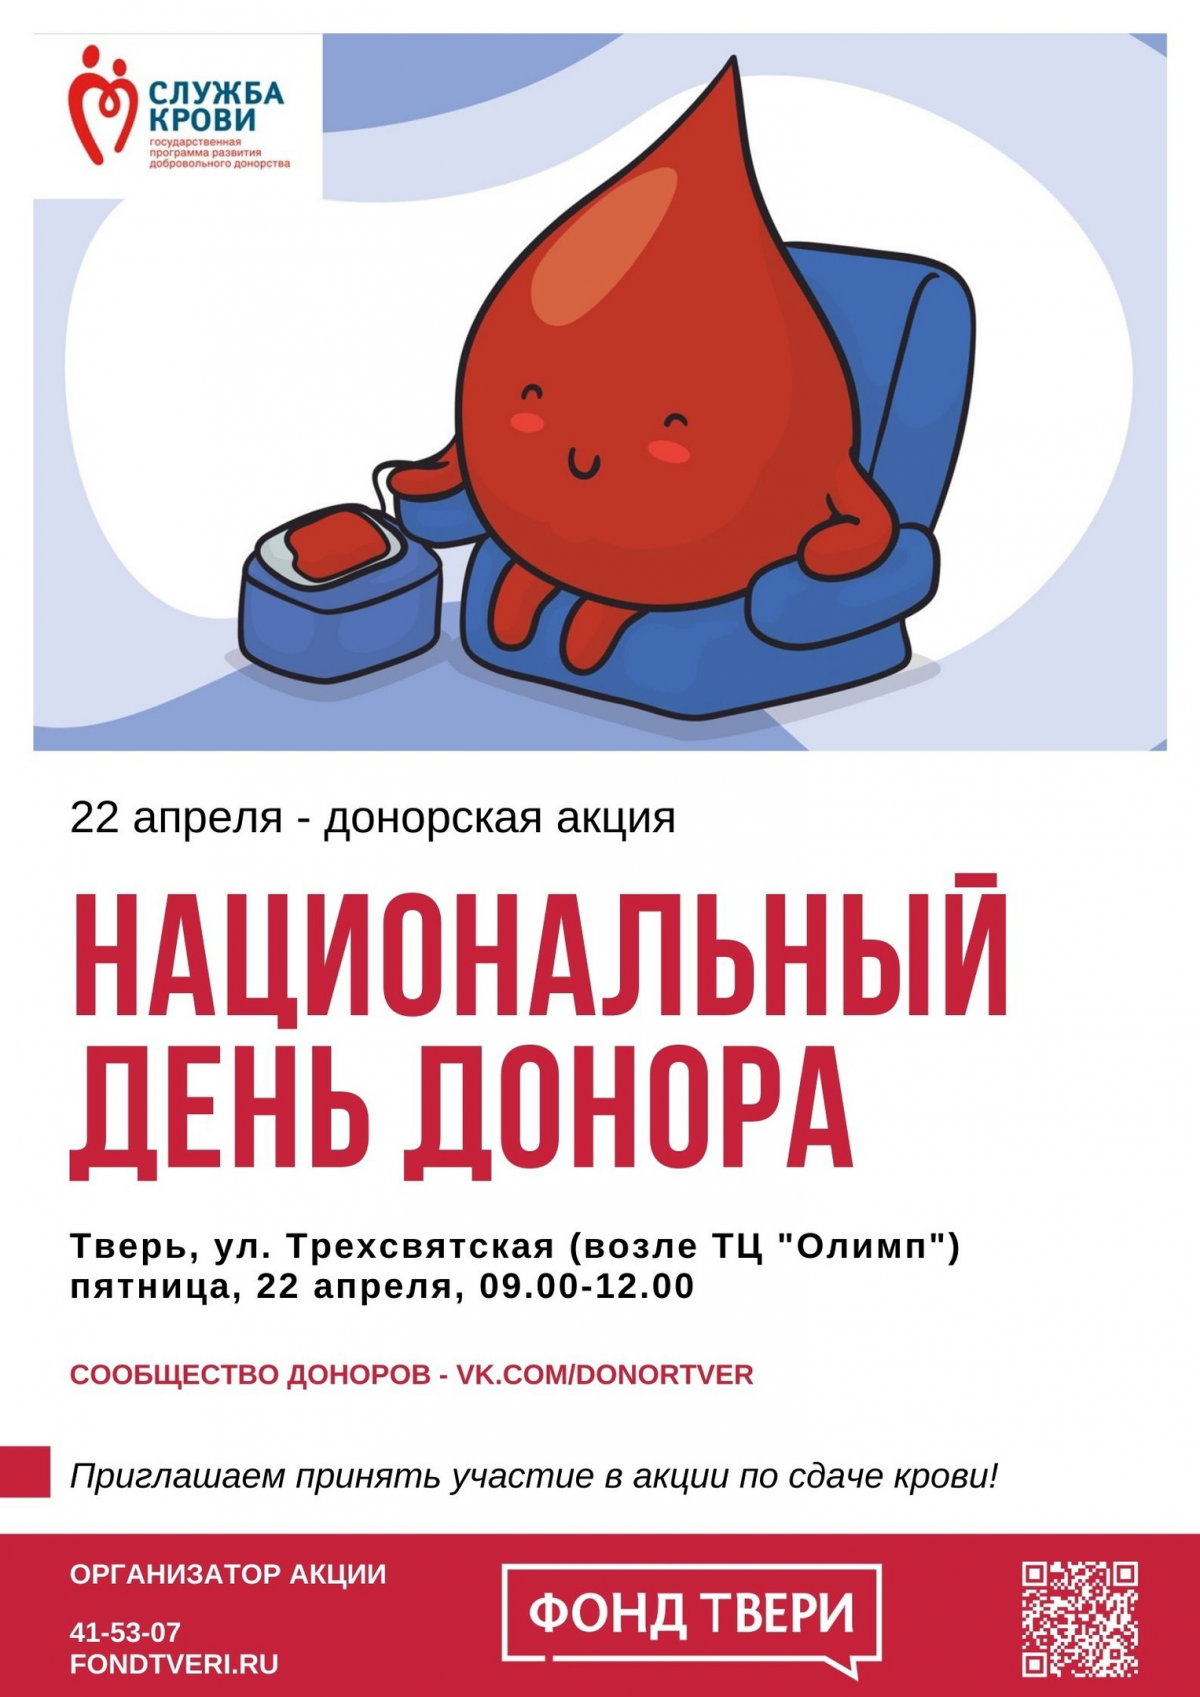 Донор тверь. День донора. Национальный день донора. Национальный день донора крови в России. Акция день донора в России.